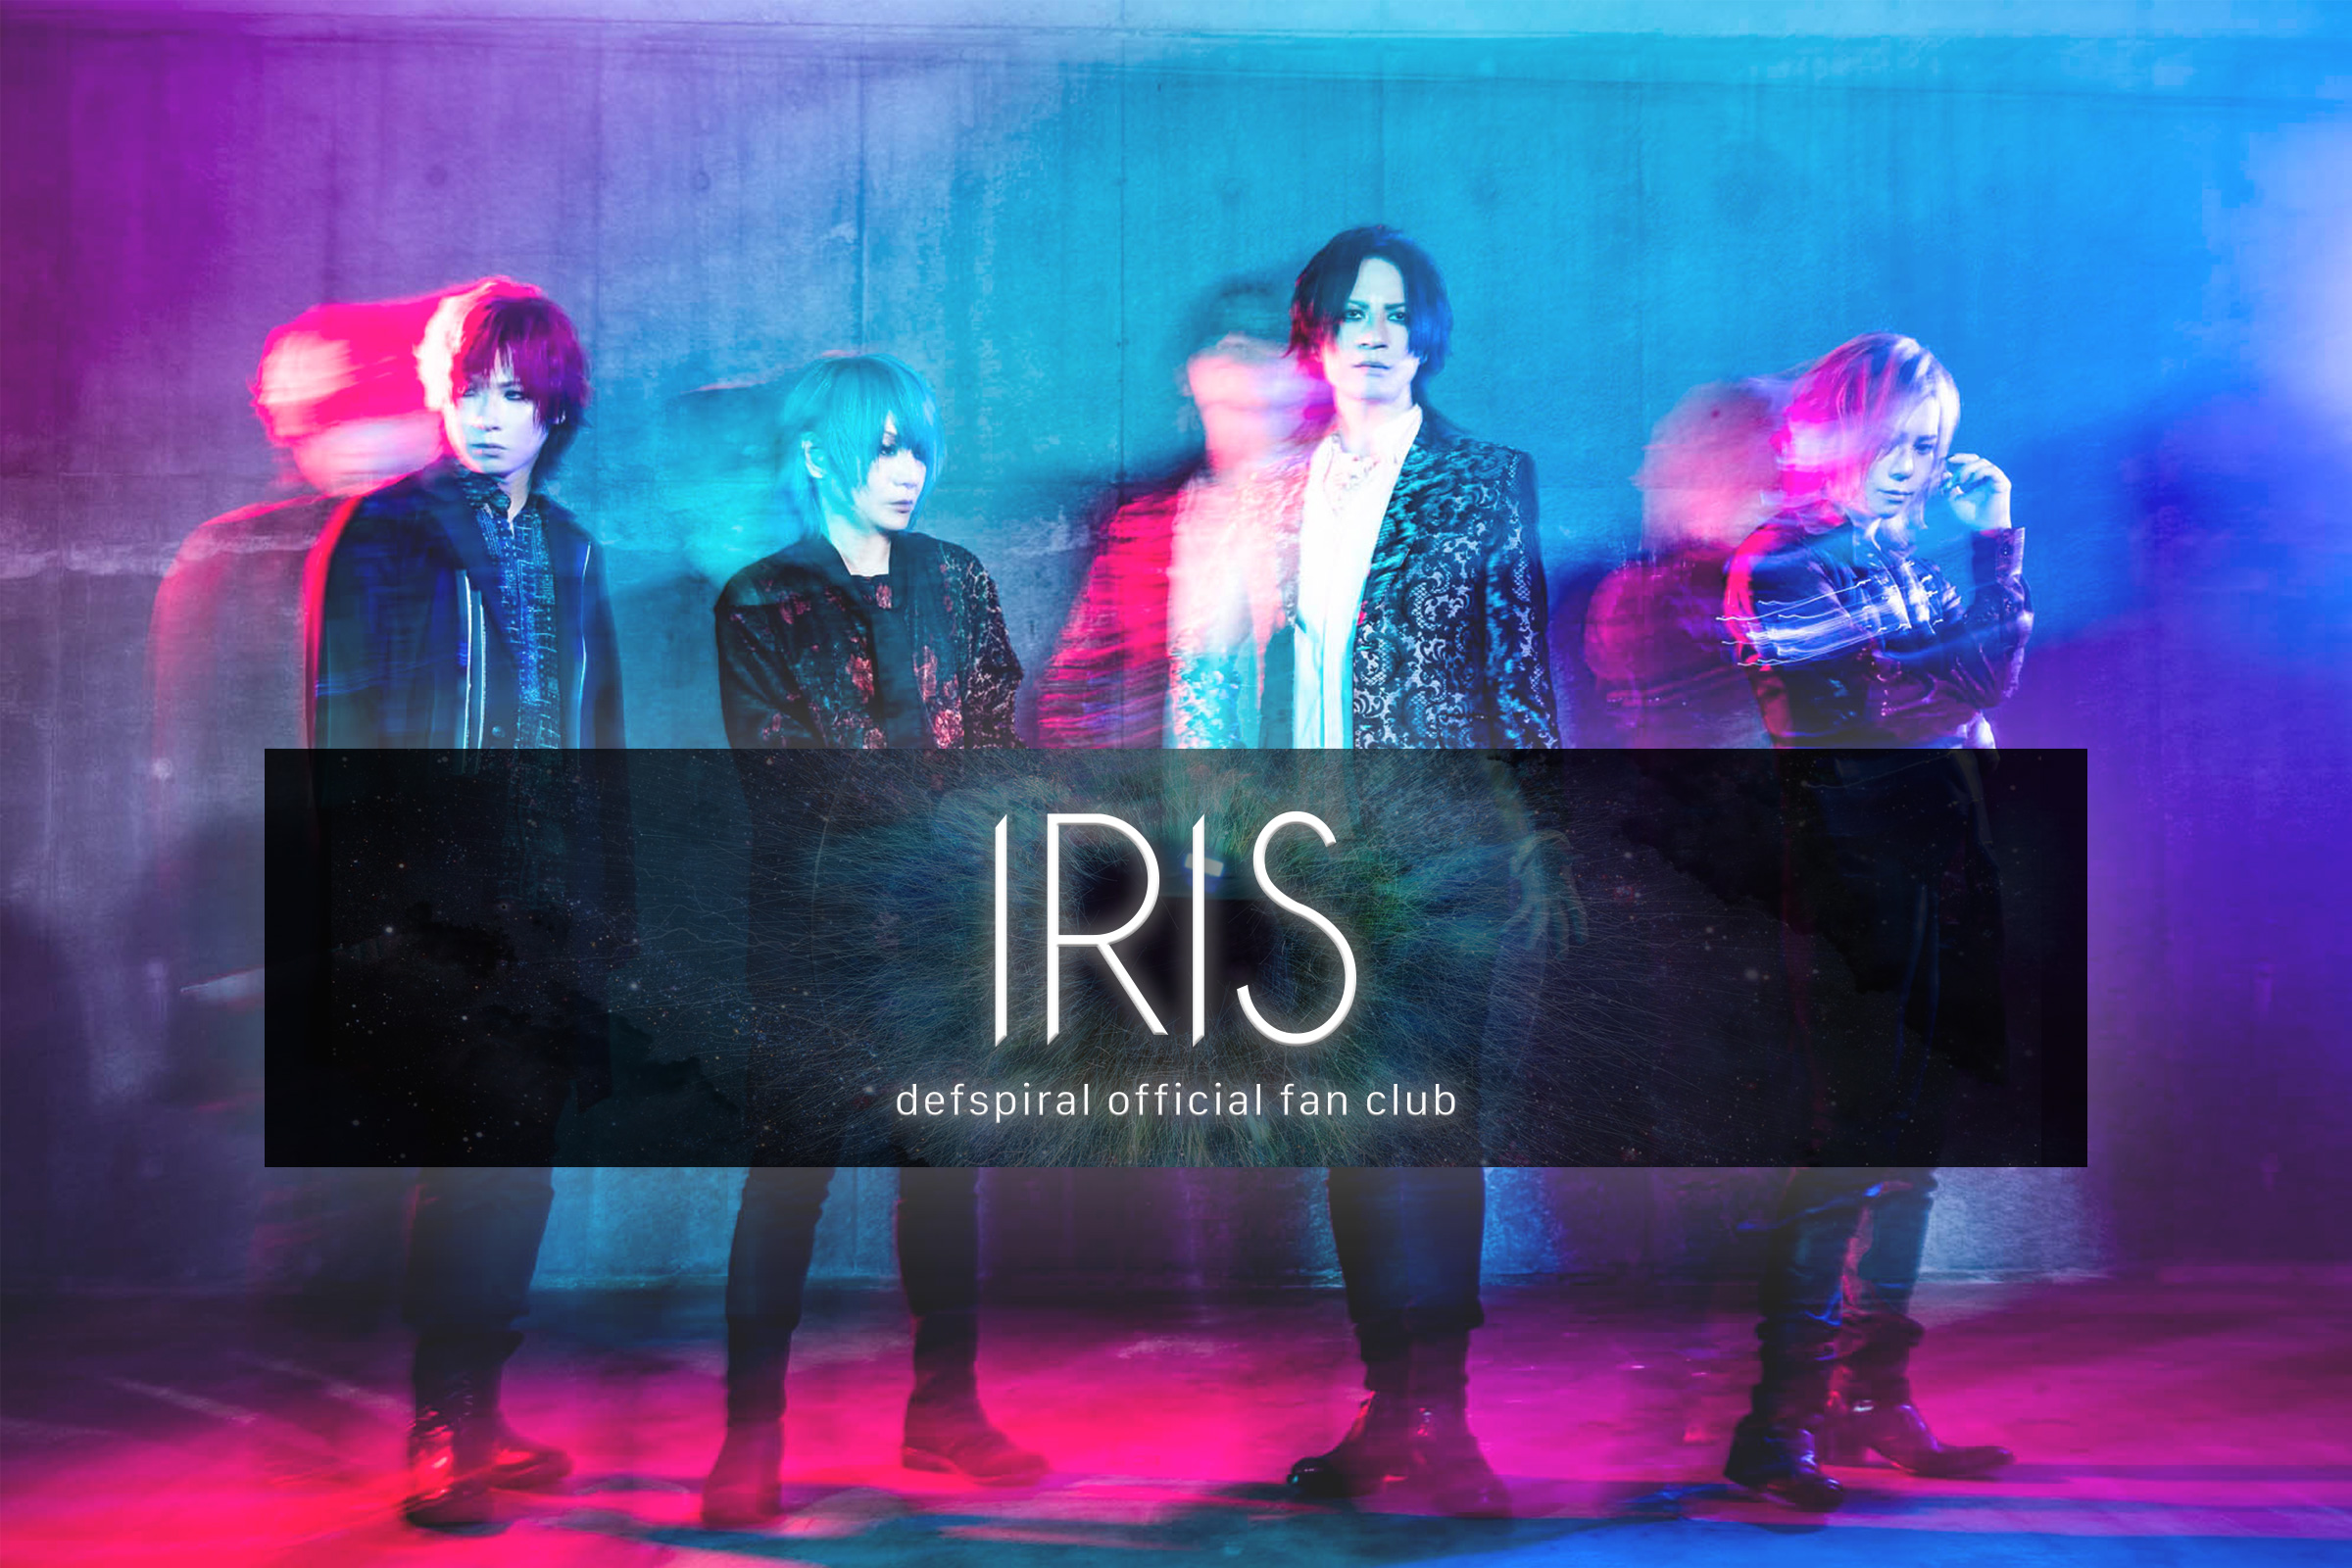 defspiral│defspiral official fan club "IRIS"